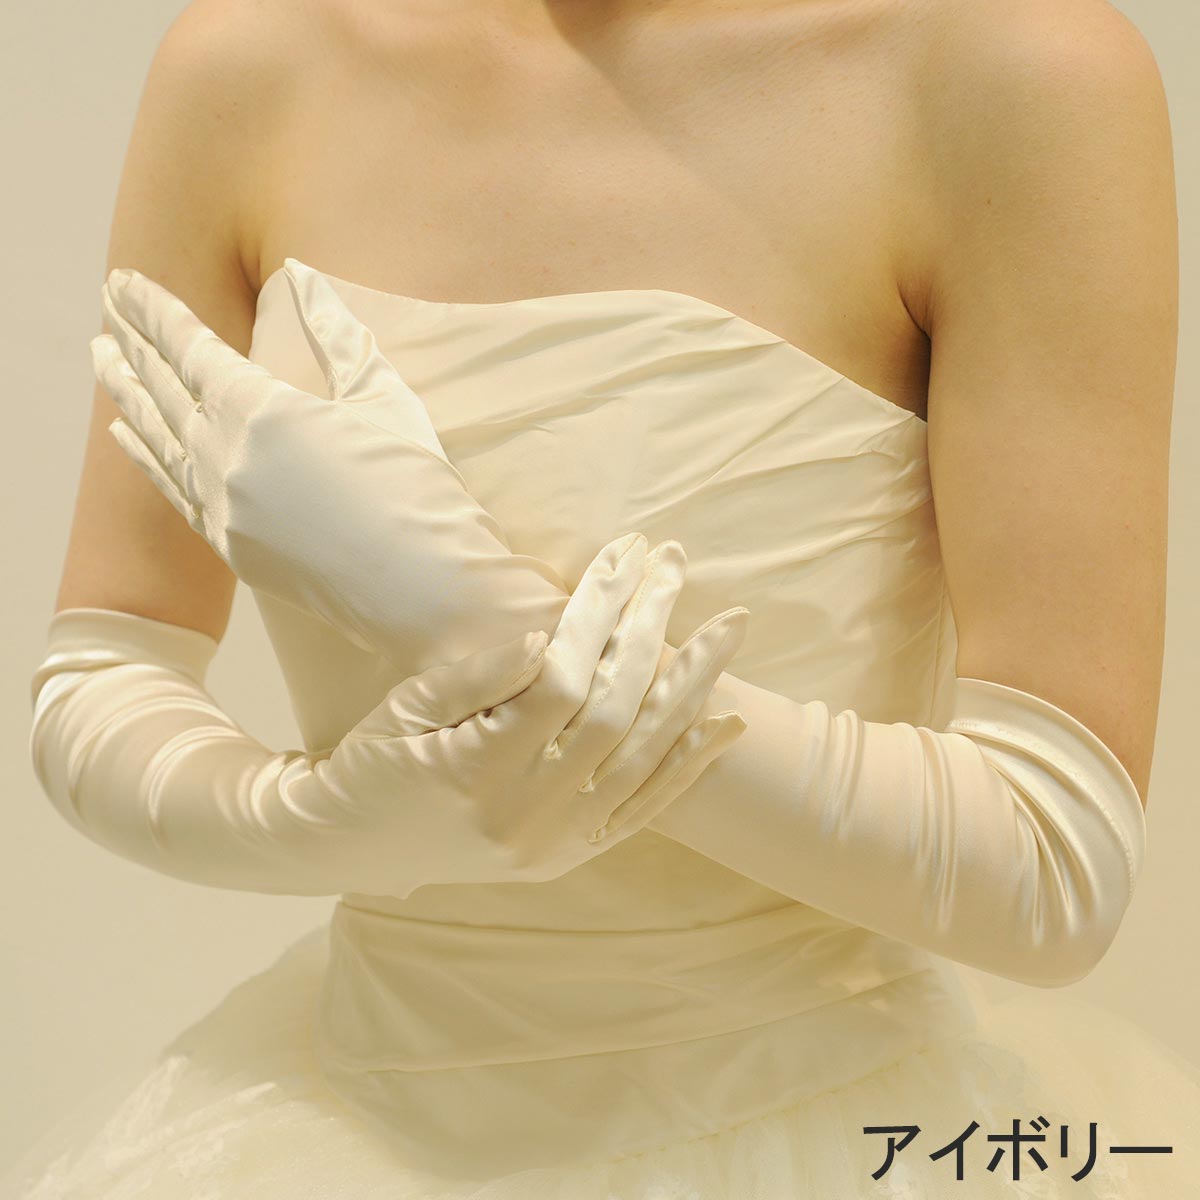 【楽天市場】ウエディング グローブ ロング サテン 50cm ブライダル 日本製 ホワイト オフホワイト アイボリー ウエディンググローブ